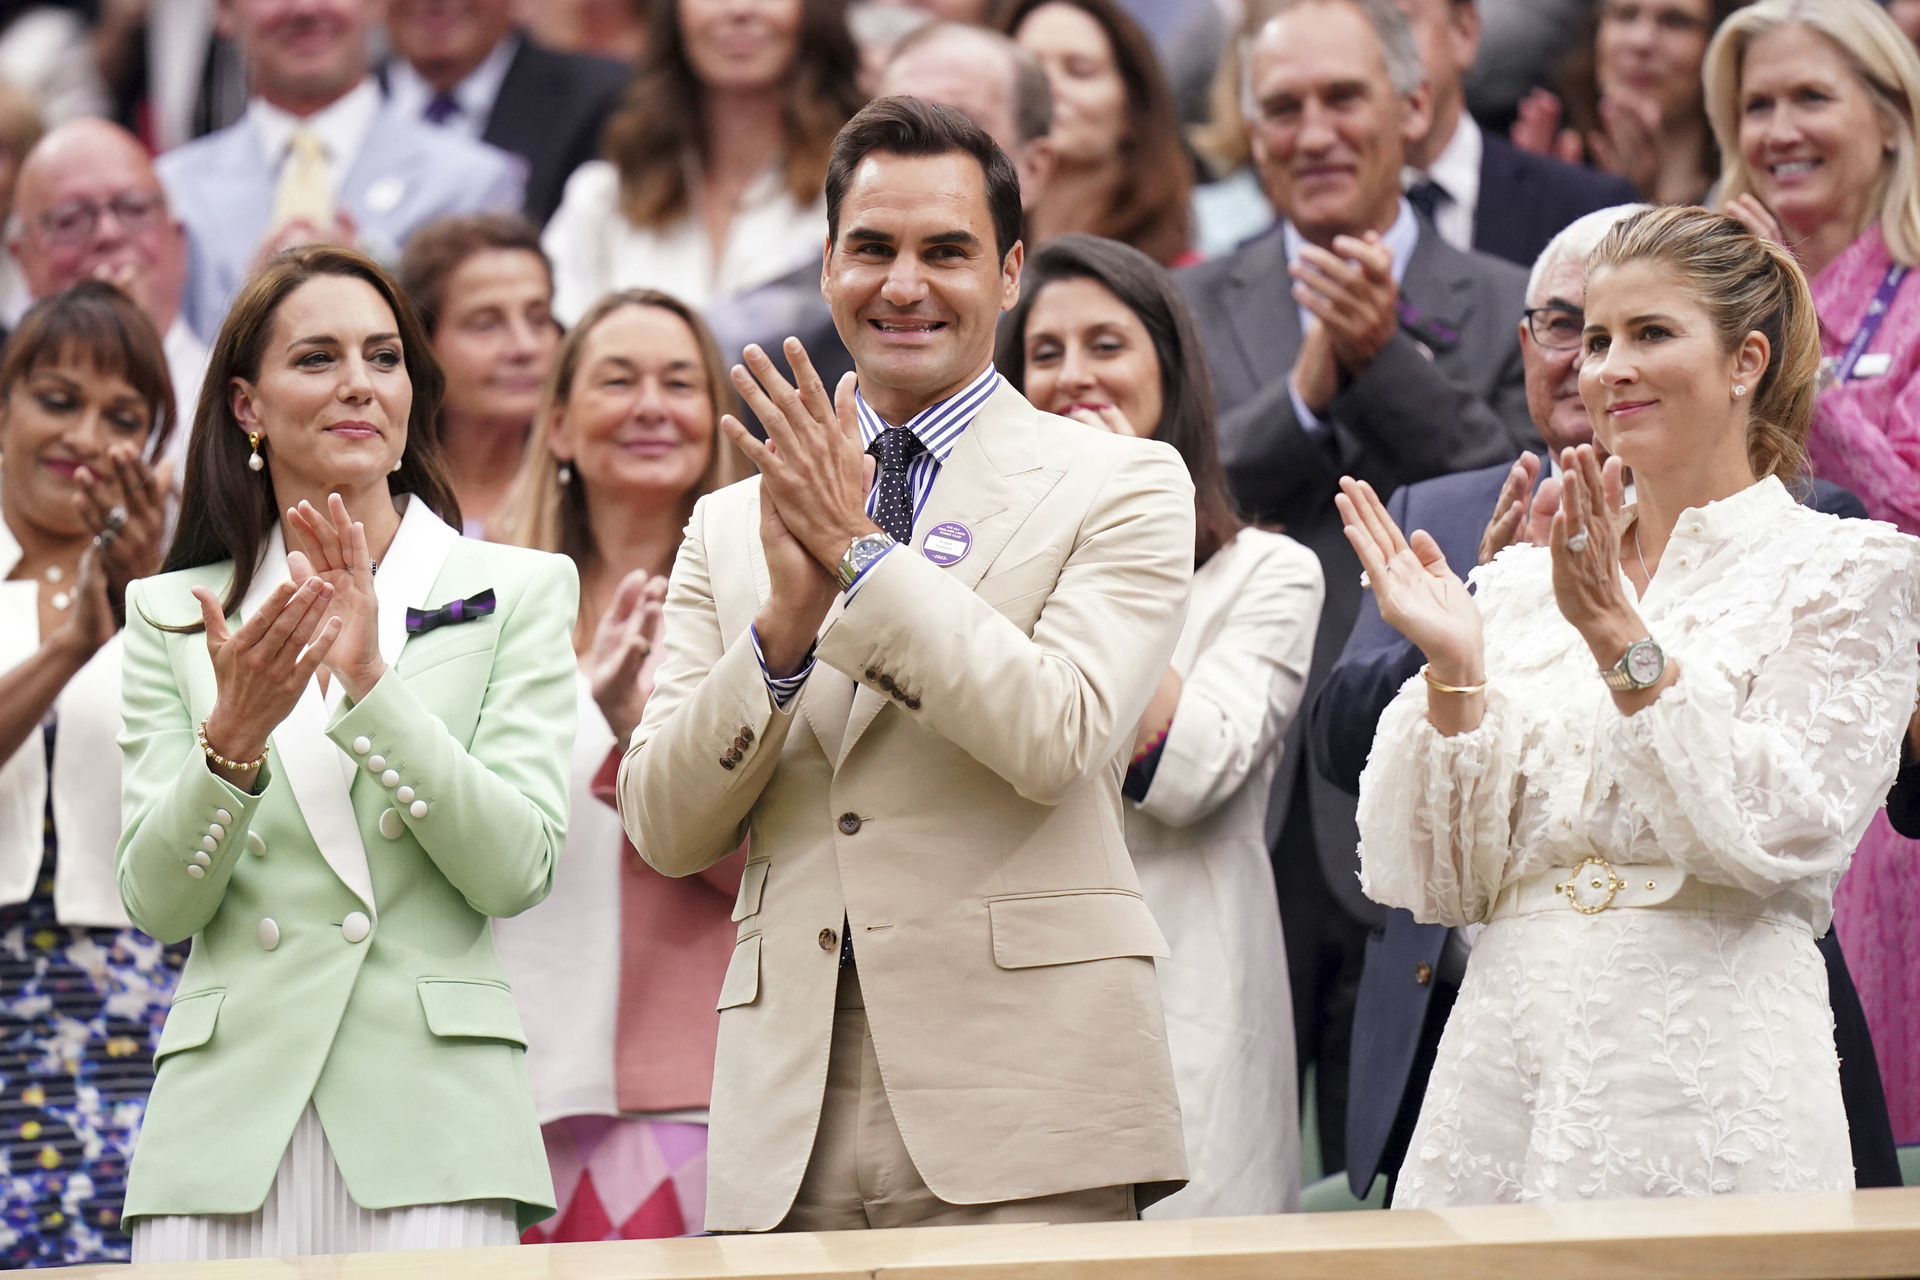 VIDEO: Roger Federer recibe gran ovación en Wimbledon